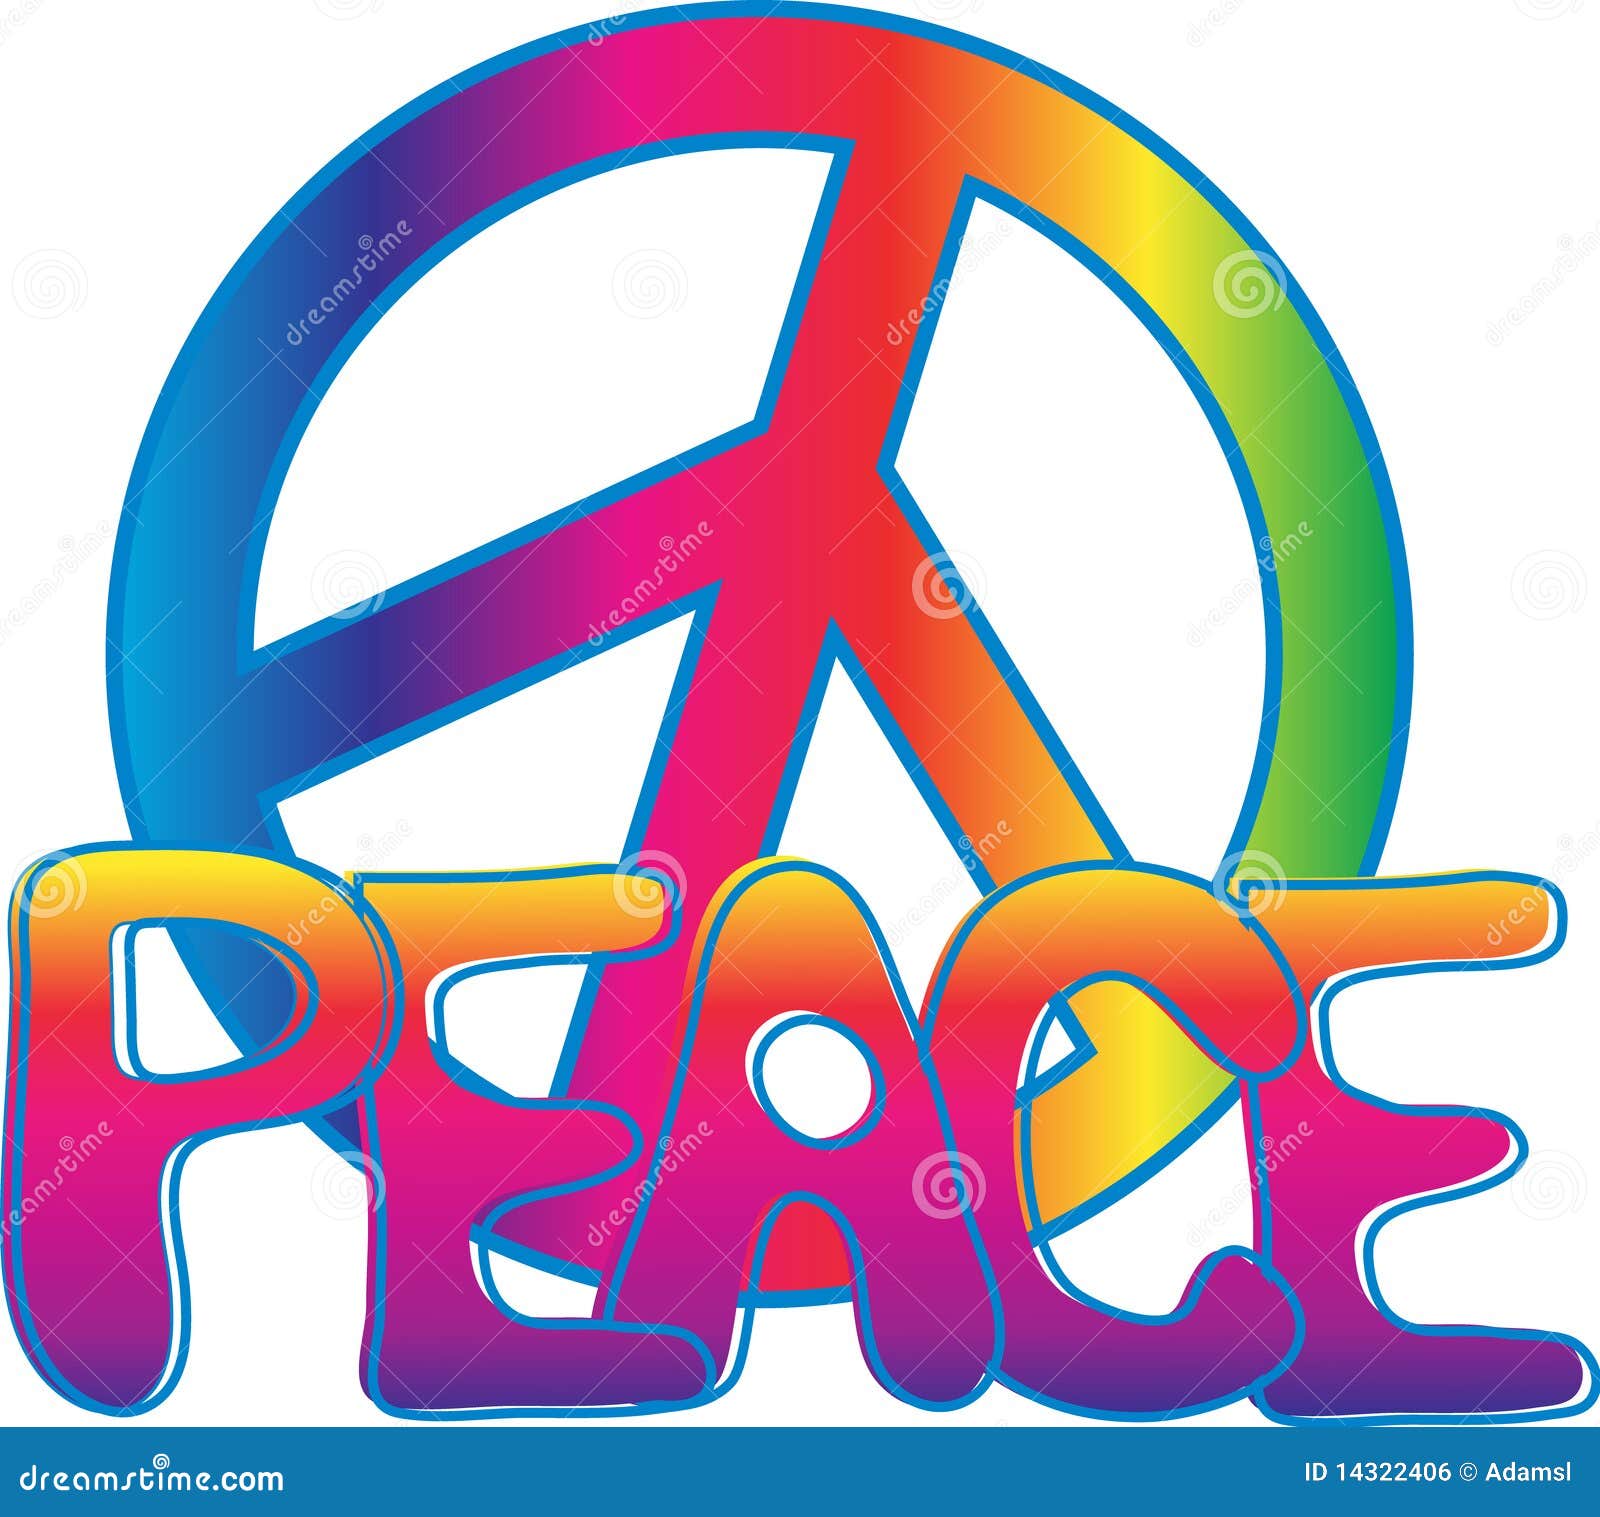 peace-text-peace-sign-14322406.jpg (1300×1249)